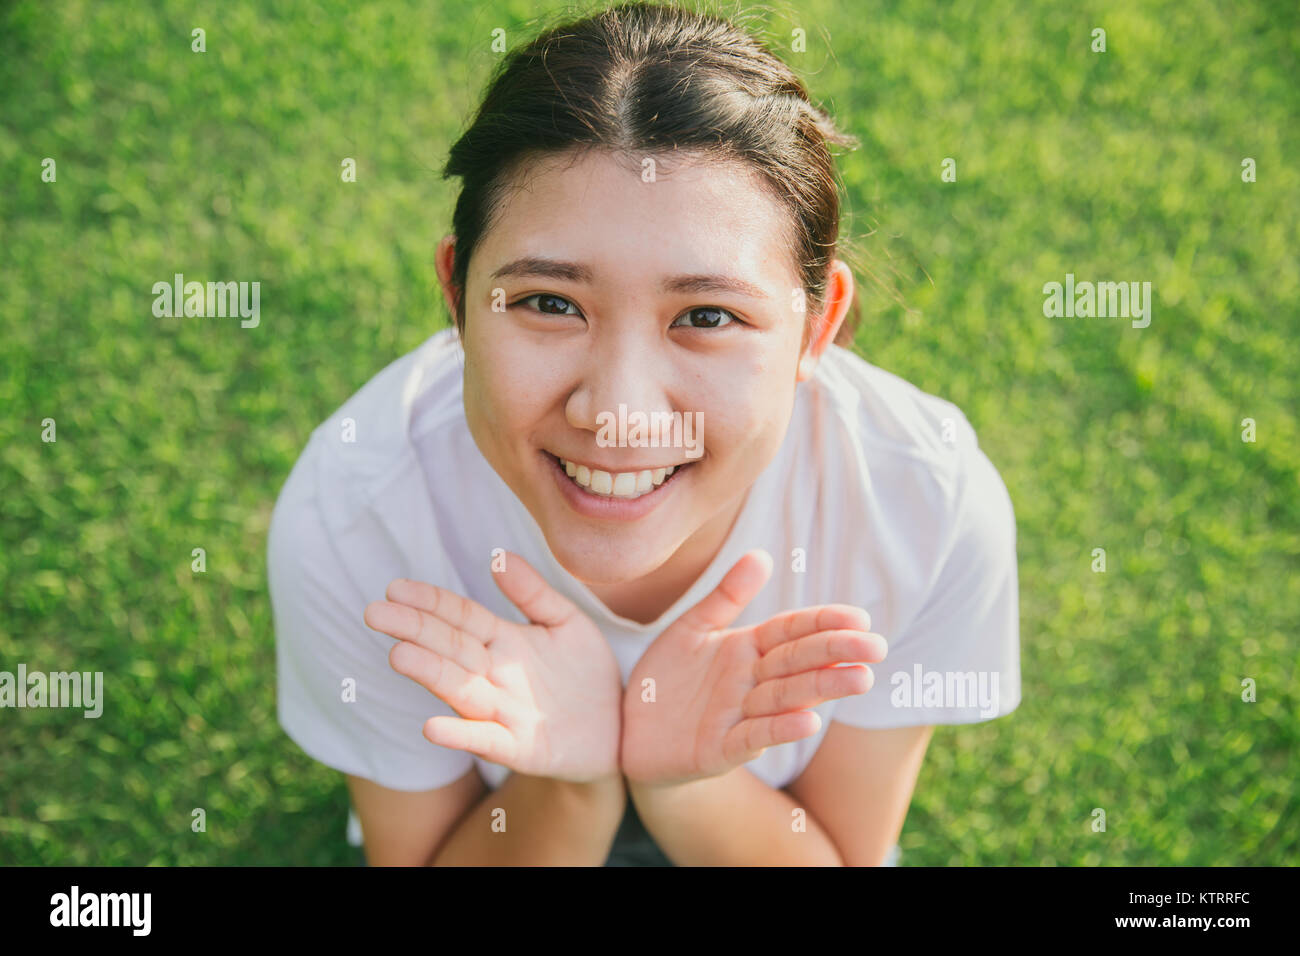 Jeune ado asiatique innocent sourire avec fond d'herbe verte Banque D'Images